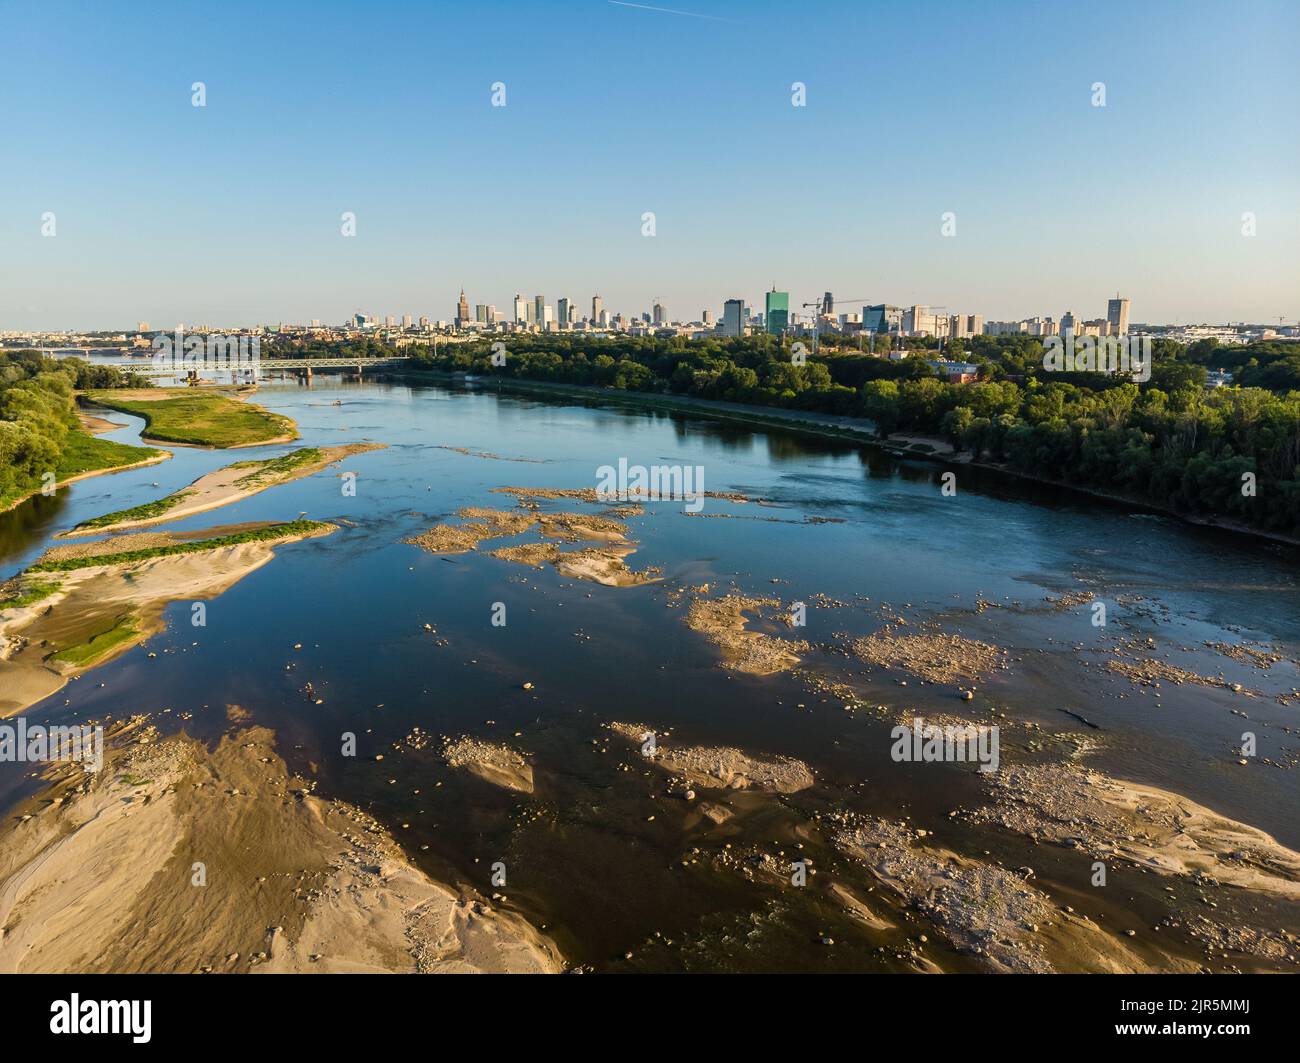 Bajo nivel de agua en el río Vístula, efecto de la sequía visto desde la perspectiva del ojo del pájaro. Ciudad de Varsovia en una distancia. Foto de stock